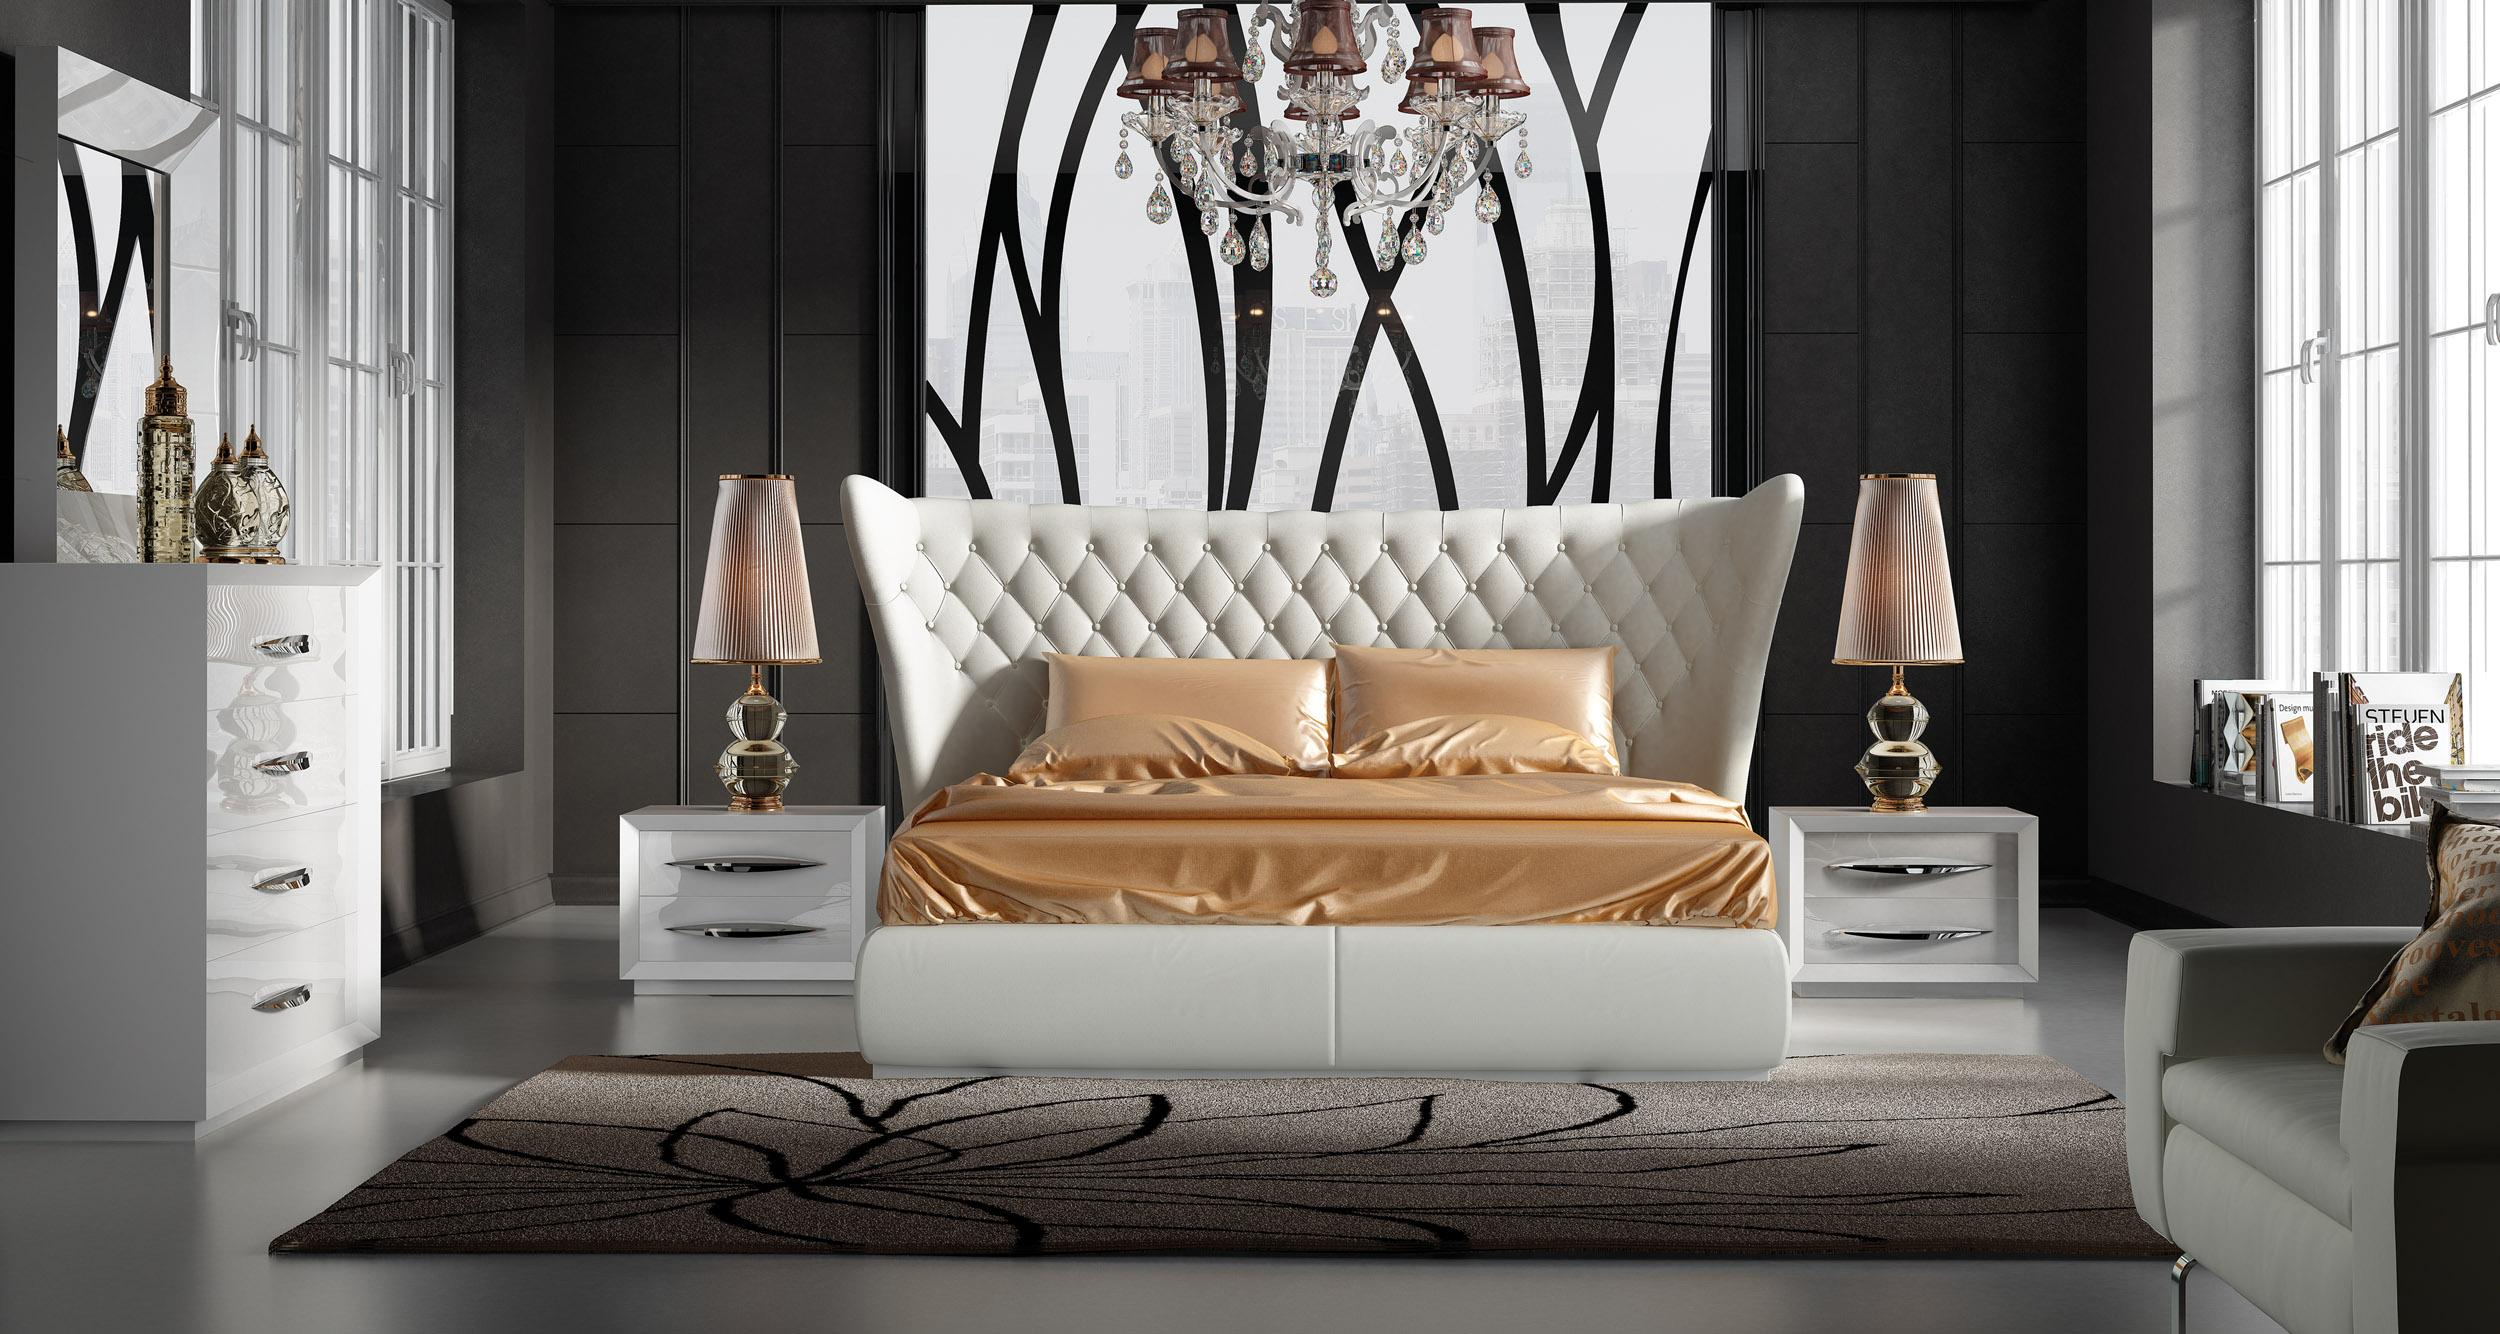 Stylish Leather Luxury Bedroom Furniture Sets regarding size 2500 X 1334